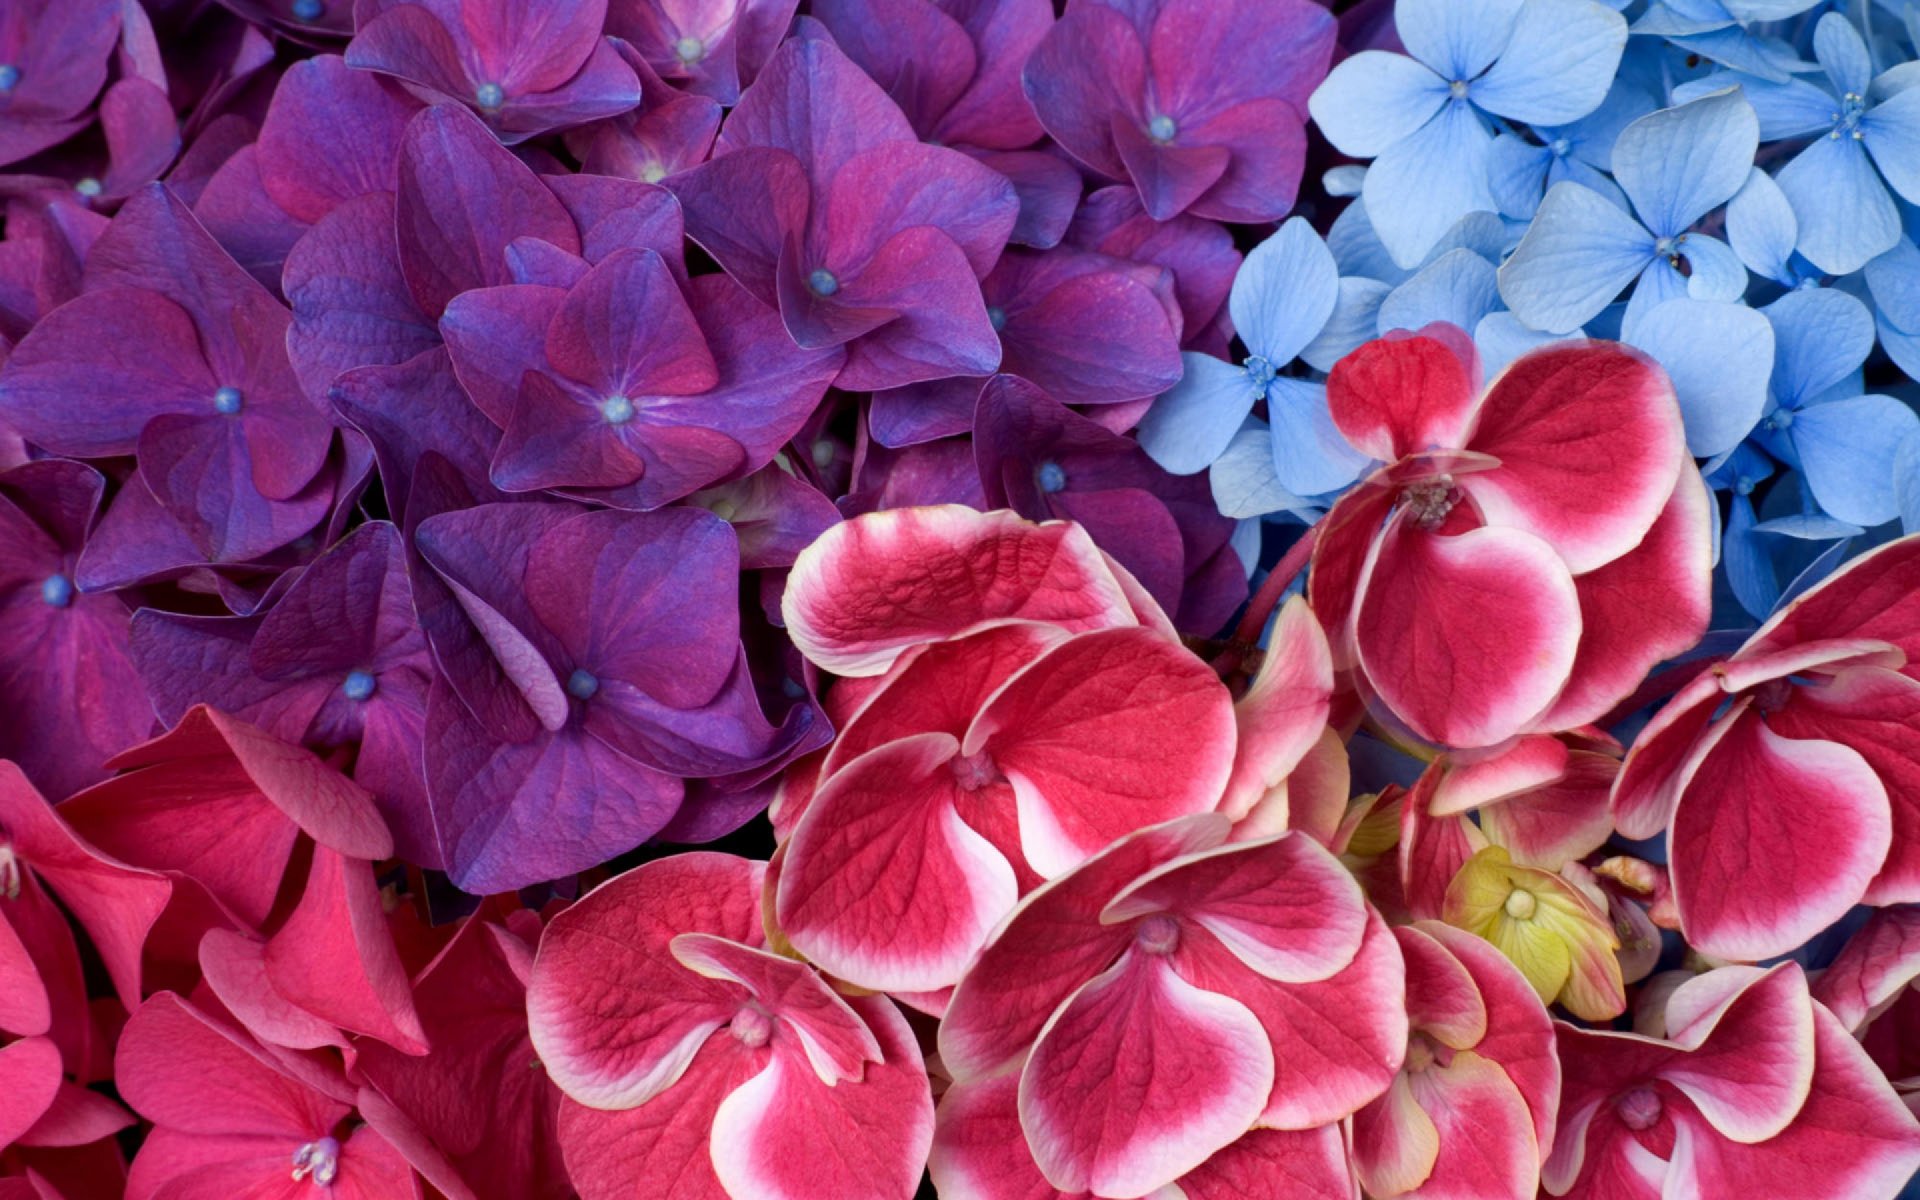 Фото цветов на обои на телефон